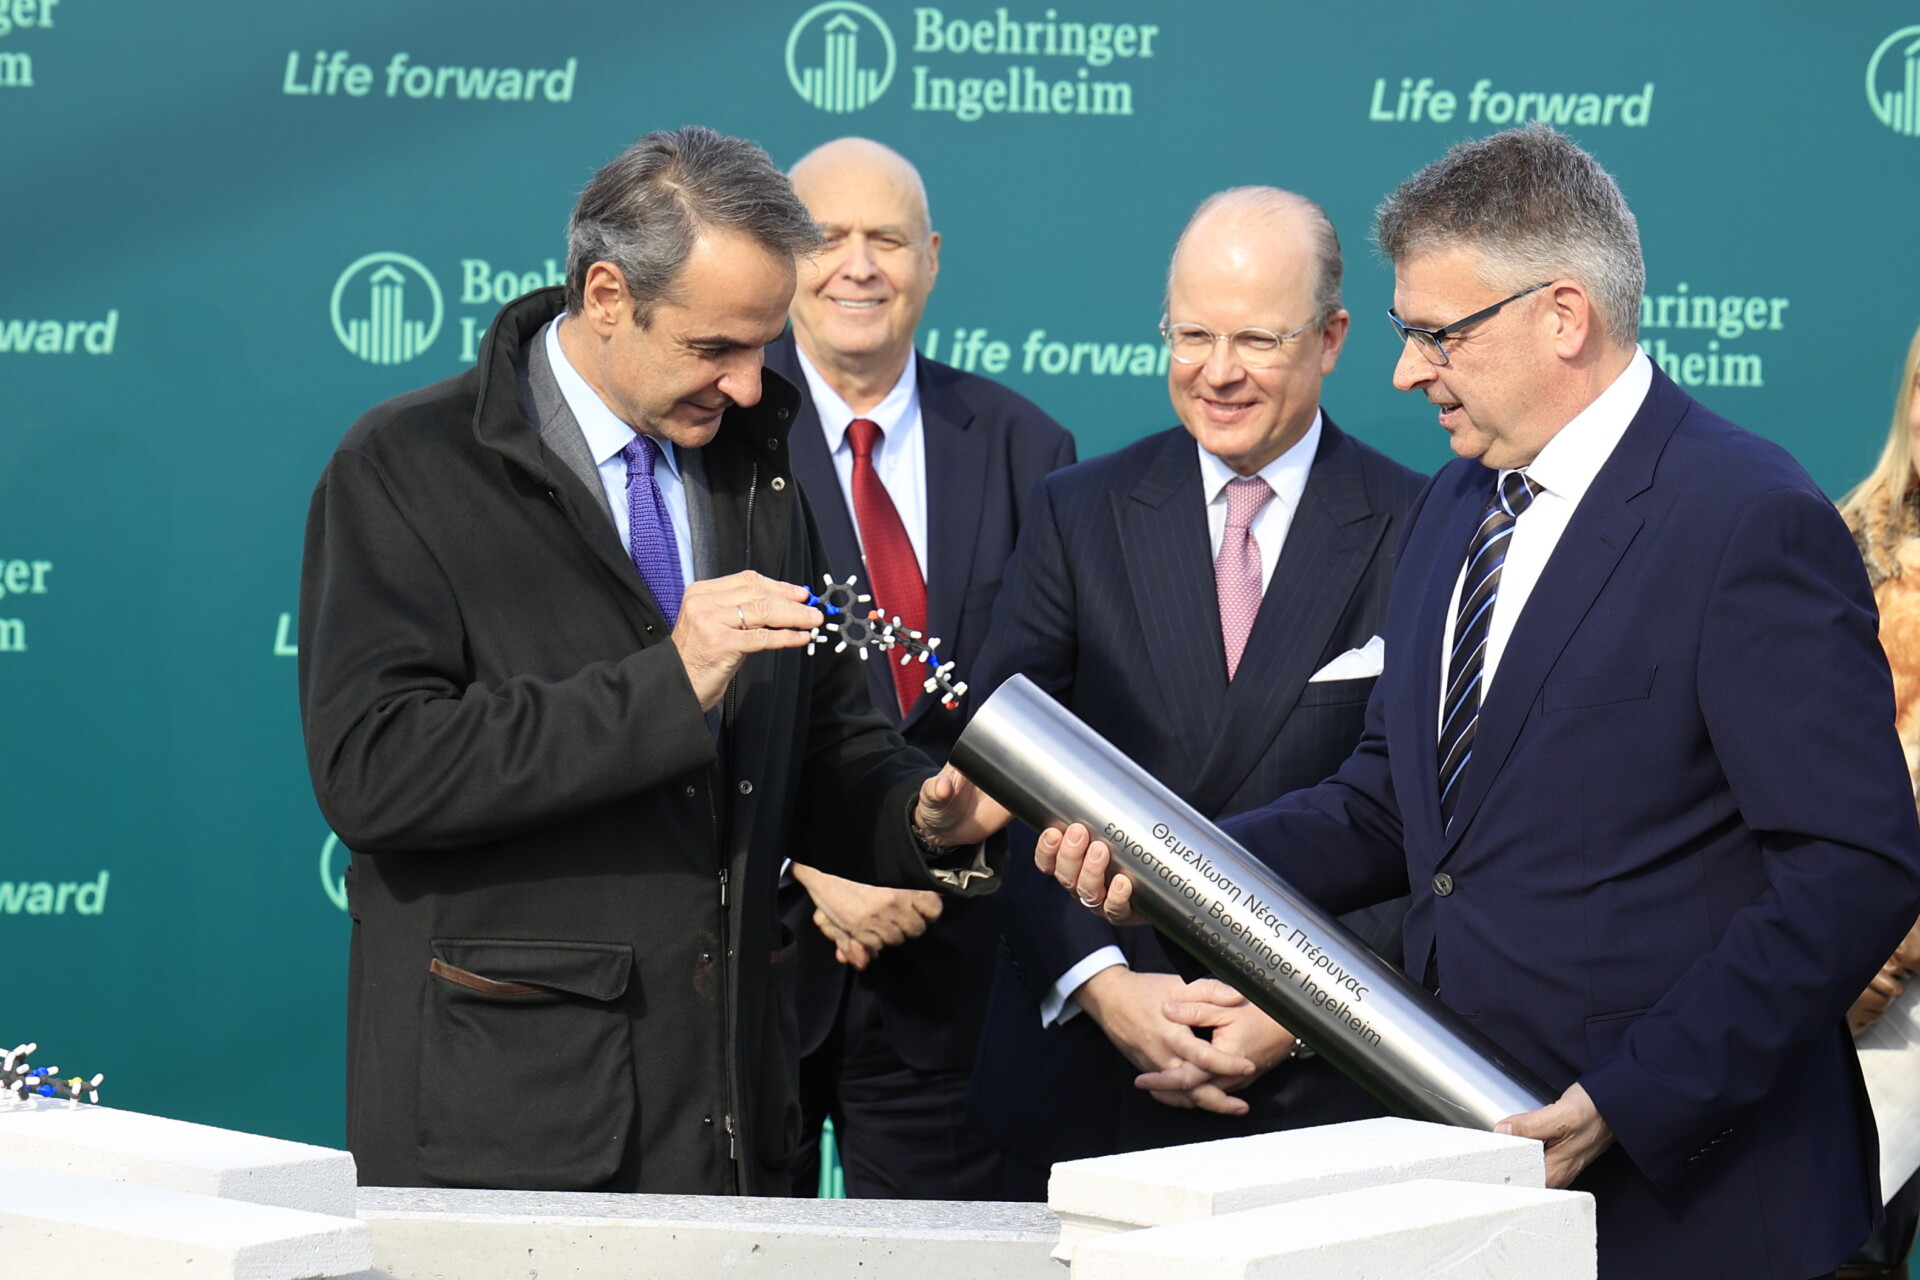 Τελετή θεμελίωσης της νέας πτέρυγας του εργοστασίου της φαρμακευτικής εταιρείας Boehringer Ingelheim στο Κορωπί, παρουσία του Πρωθυπουργού Κυριάκου Μητσοτάκη